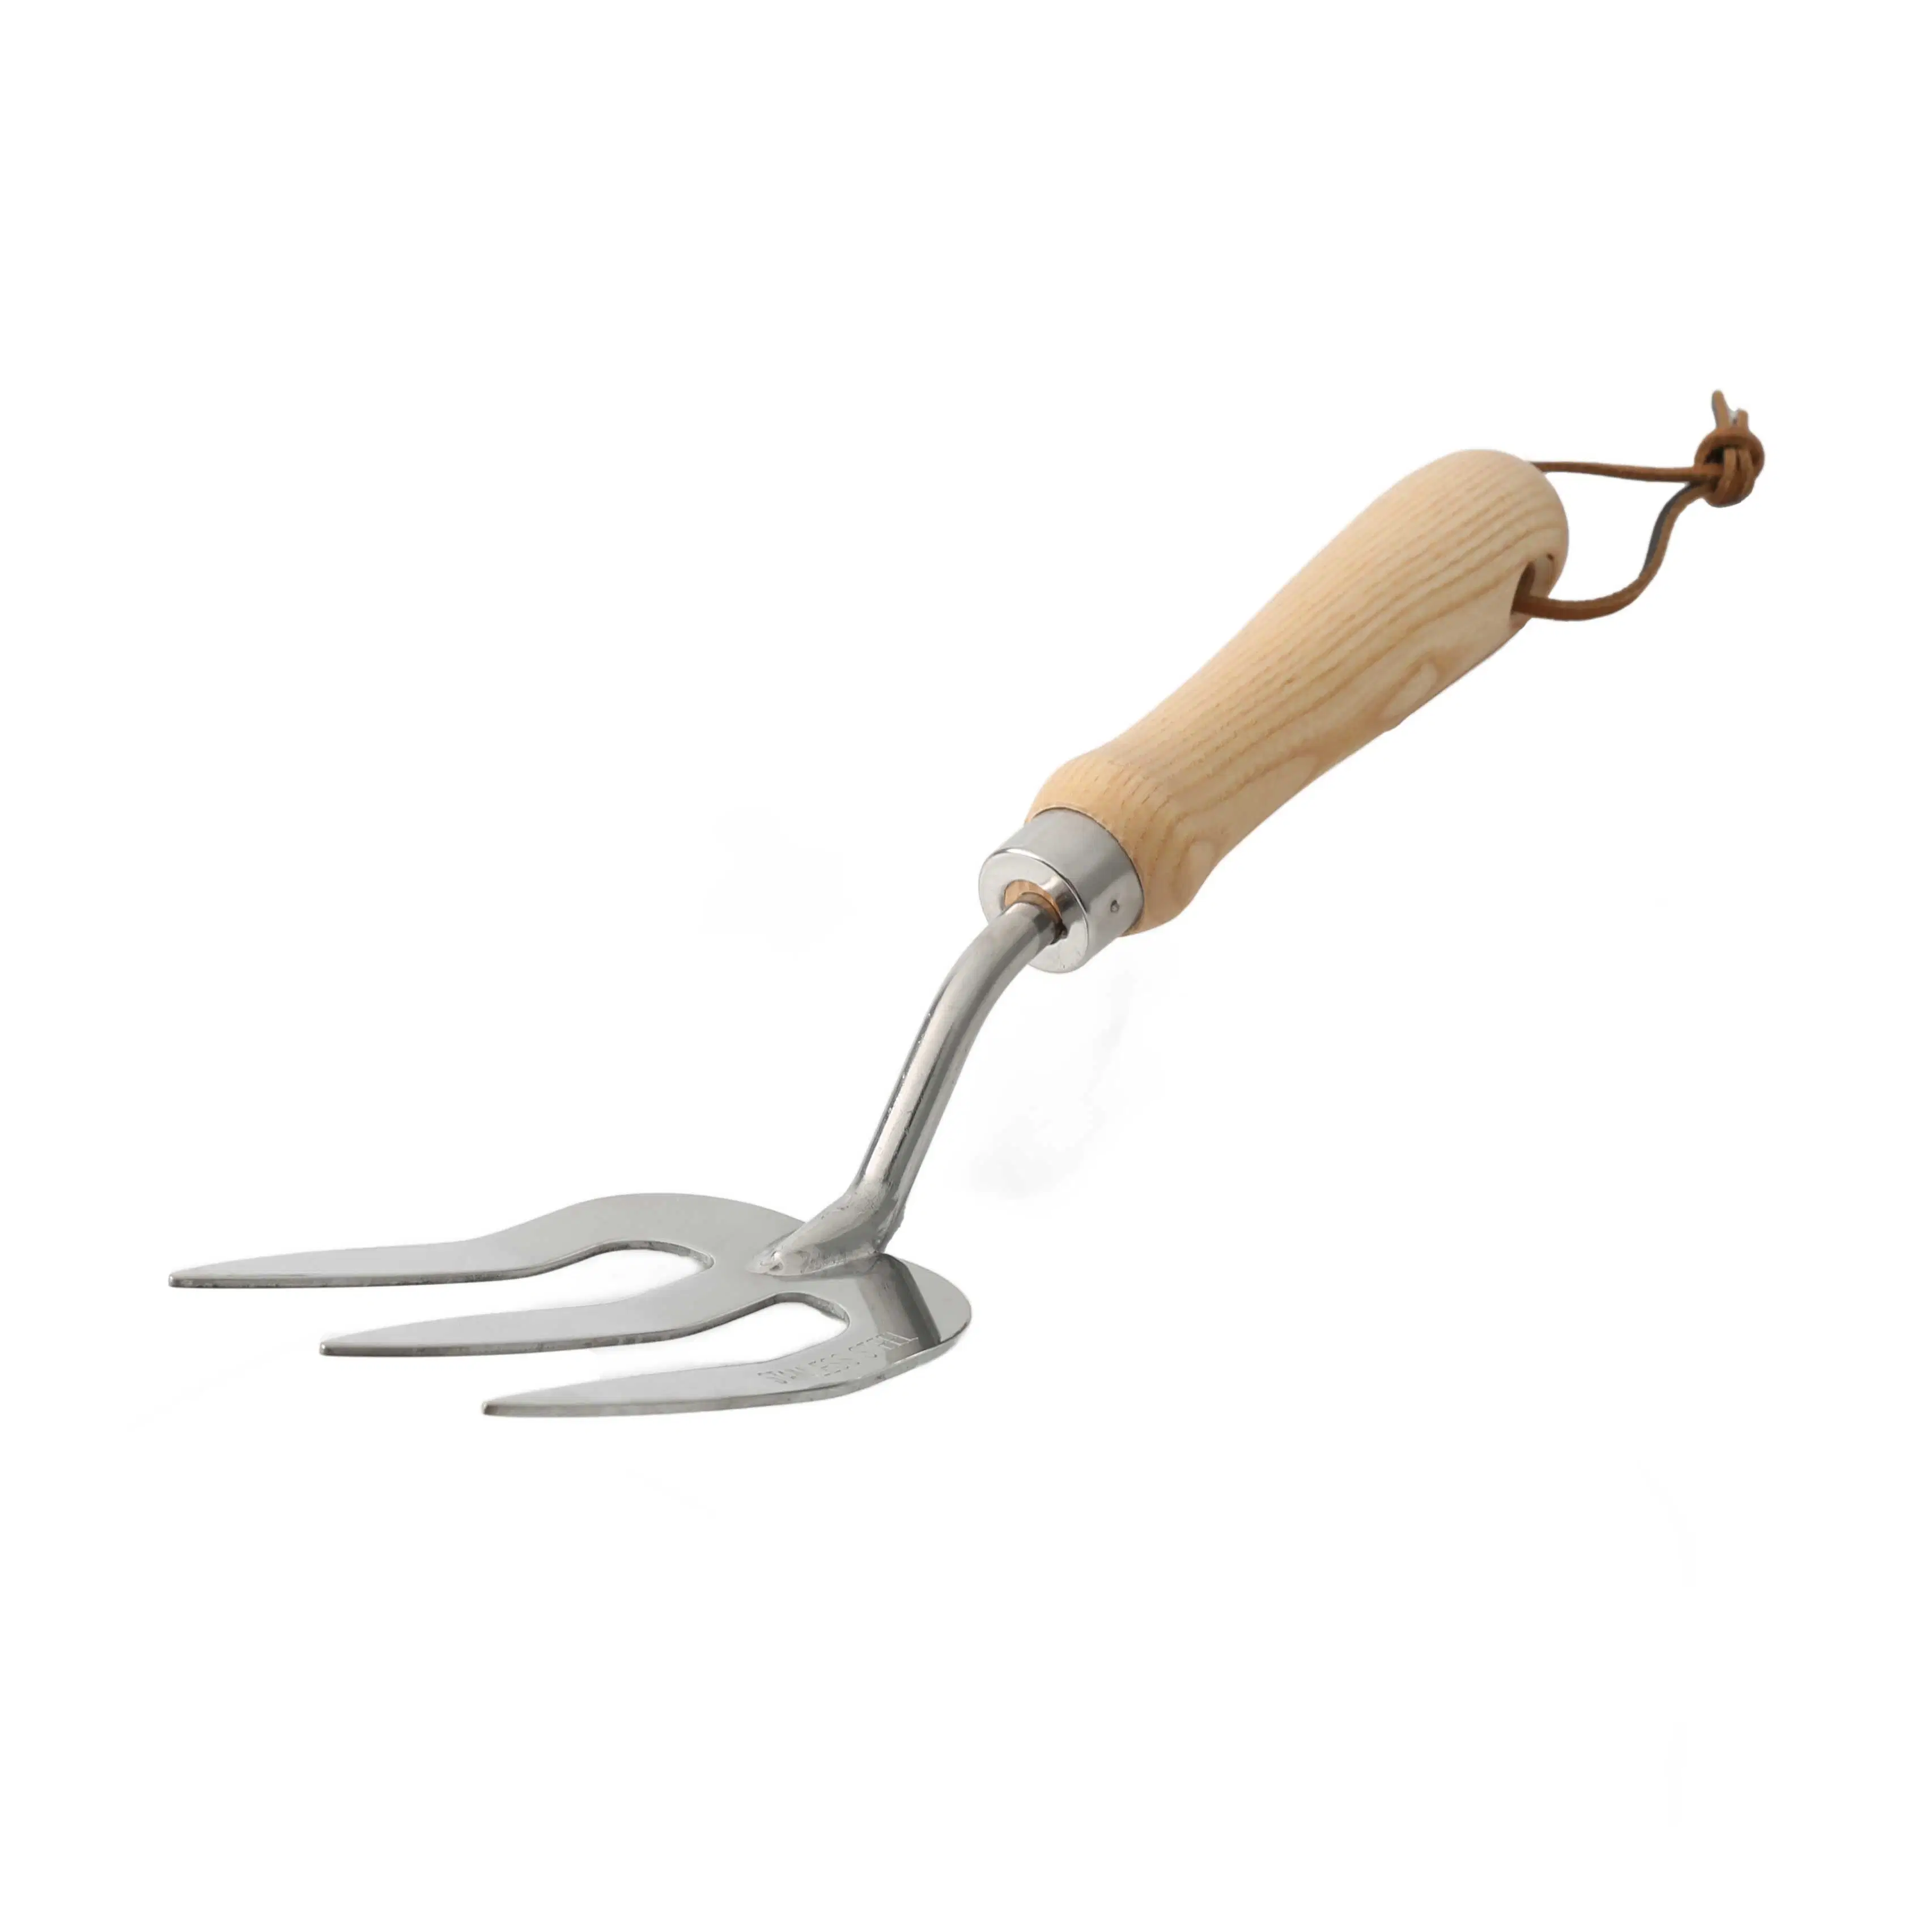 Tenedor de acero inoxidable tenedor de jardín tradicional herramienta de tenedor de mano con Mango ergonómico de madera de fresno para desyerbar excavando la plantación y el cultivo - tenedor de mano